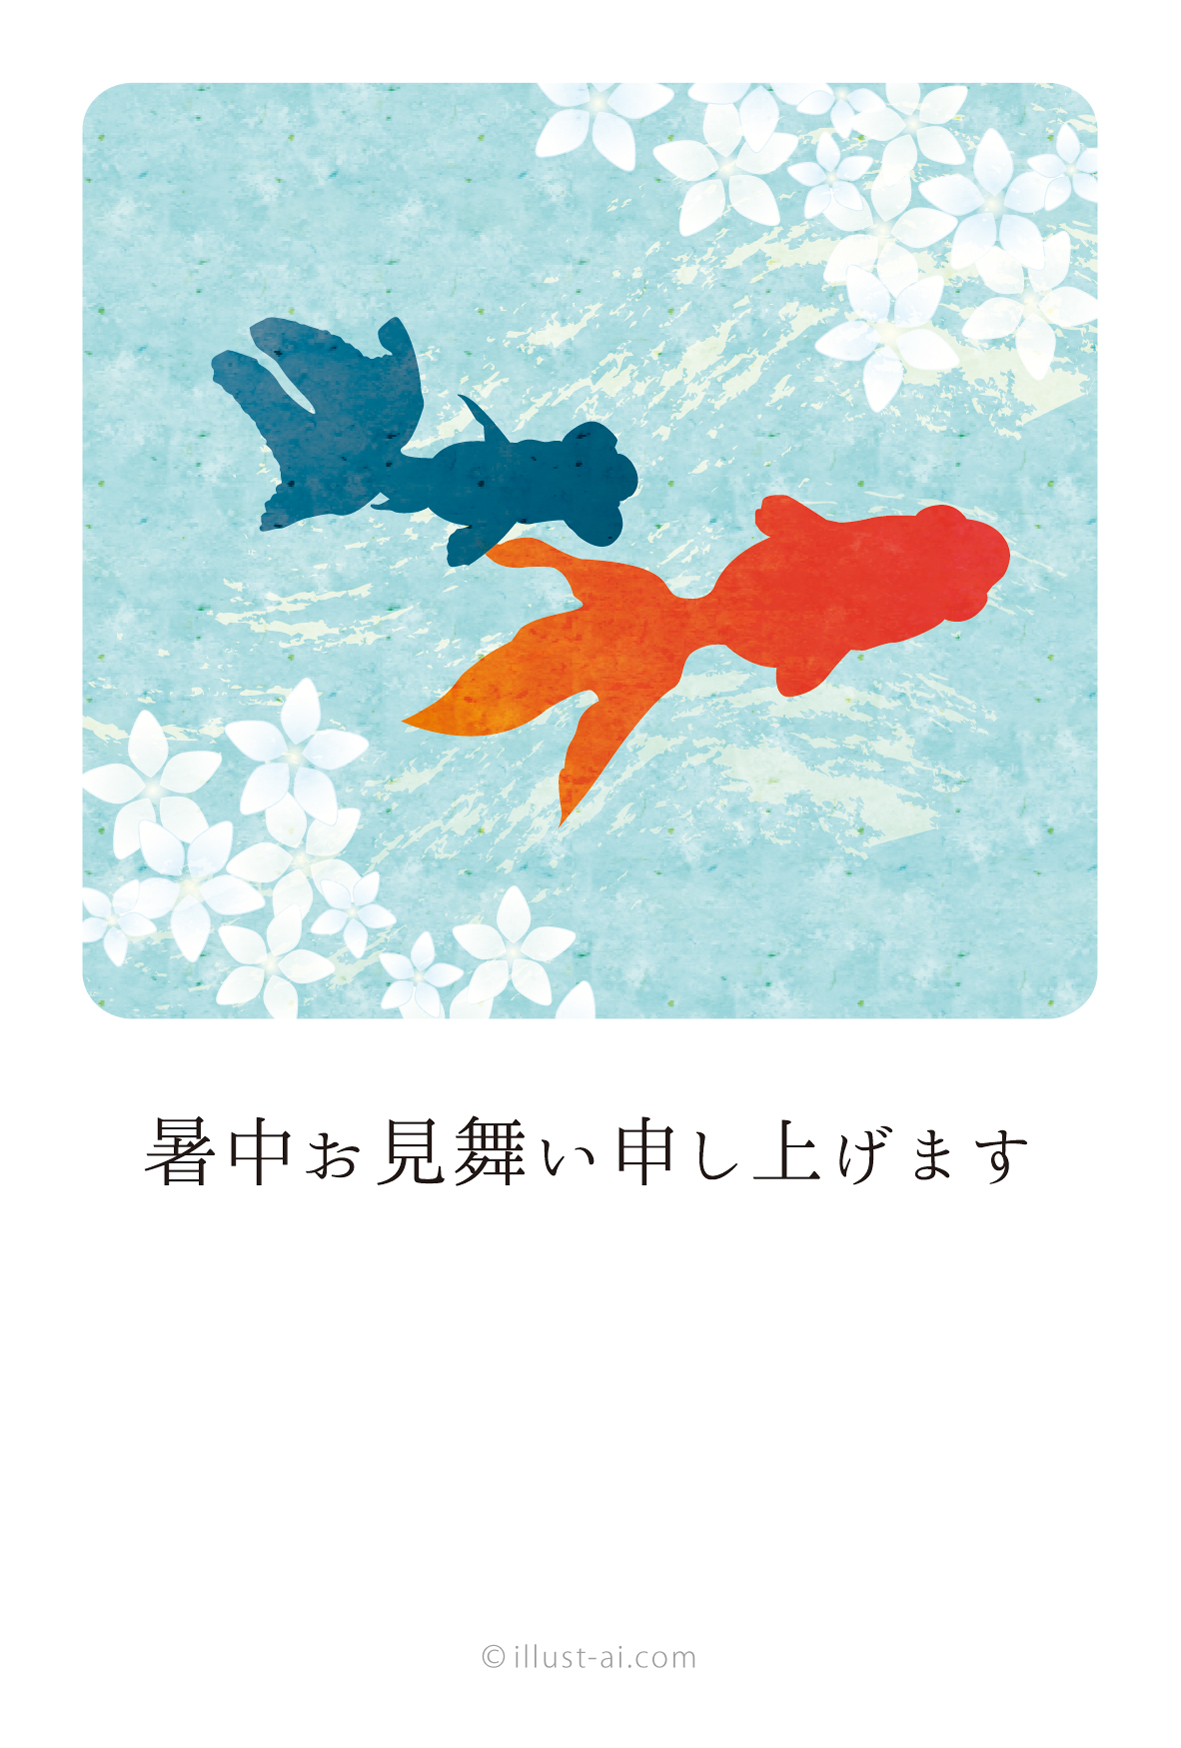 花と金魚 暑中お見舞い ポストカード イラスト素材サイト イラストareira Postcard Template